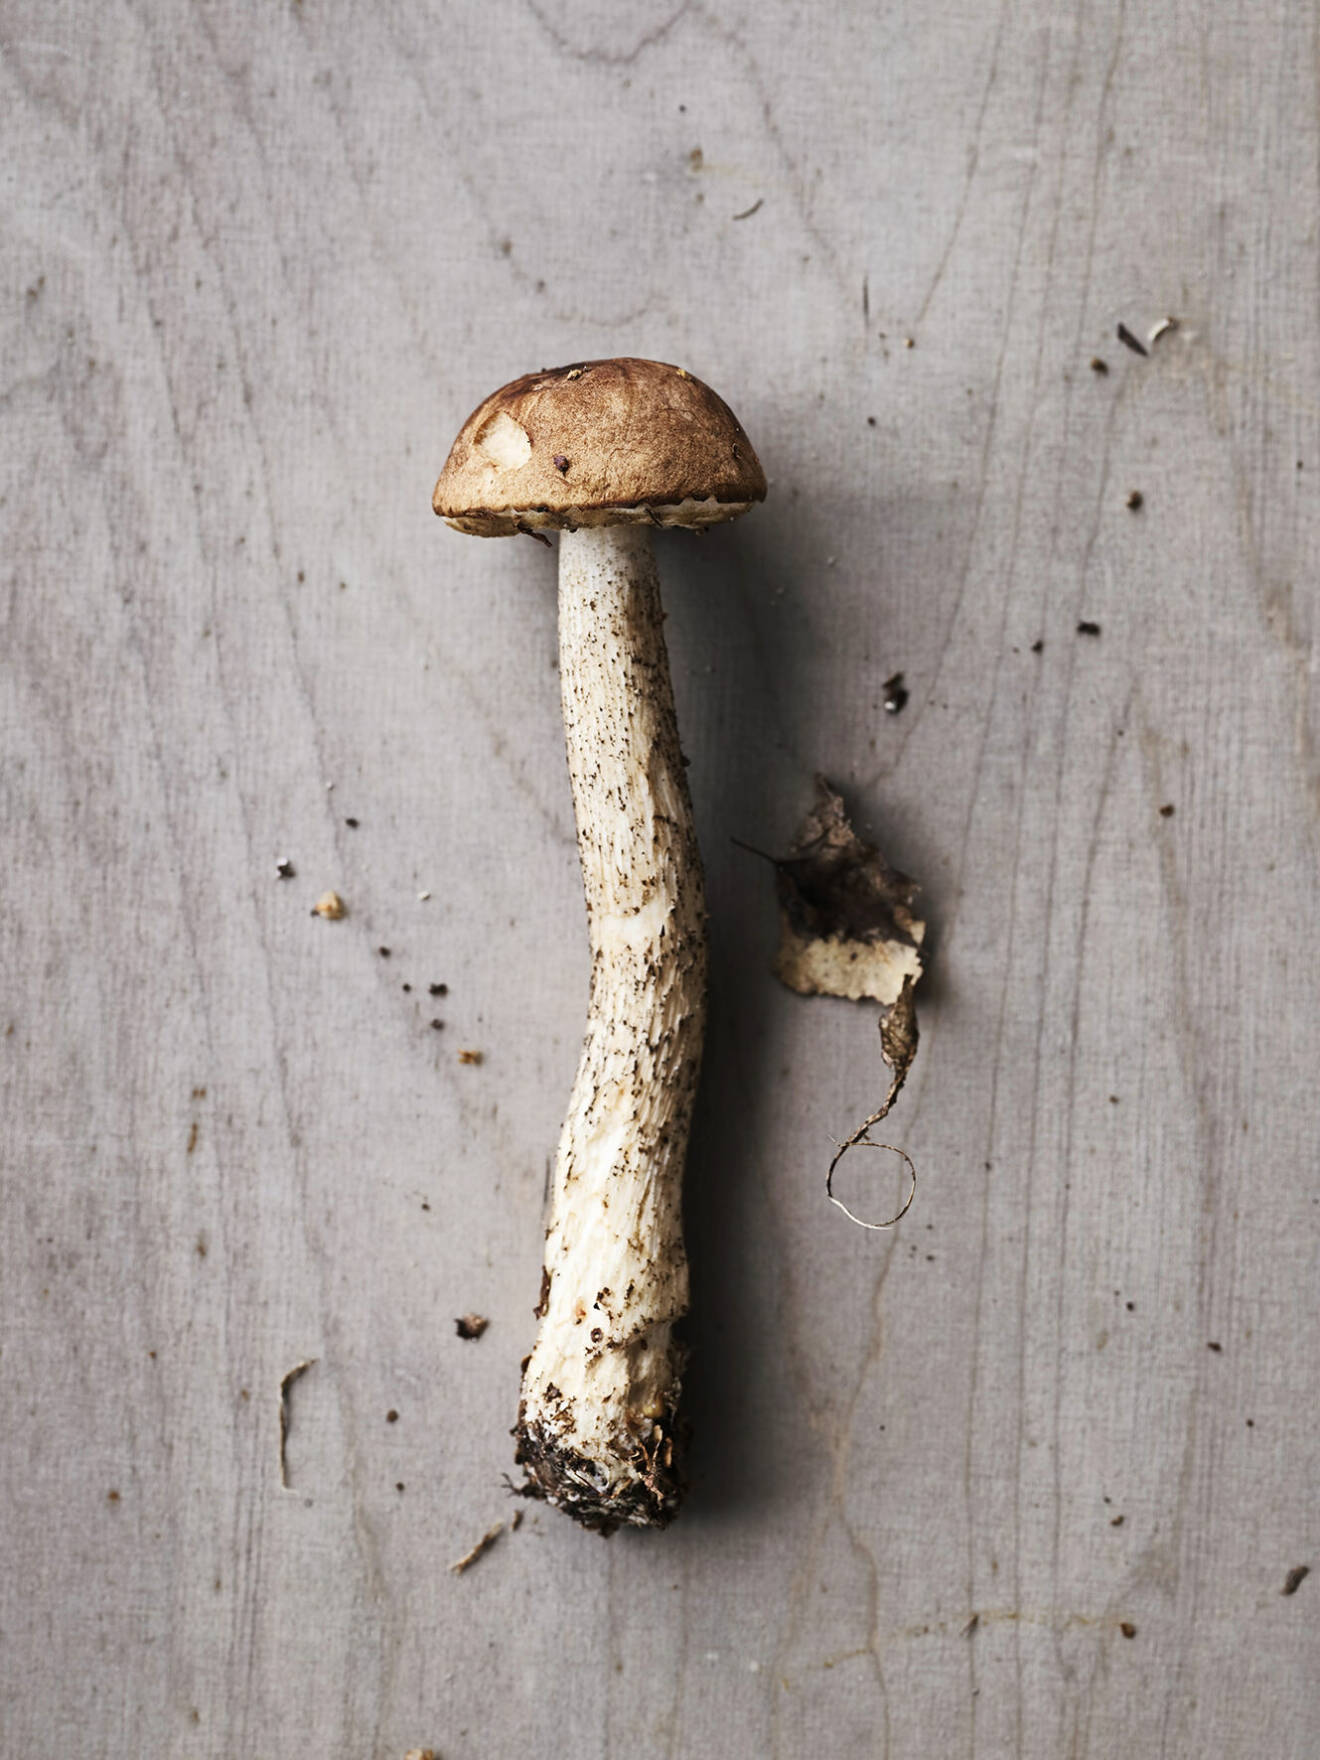 Att gå i skogen och leta svamp blir lite av terapi enligt Shalony